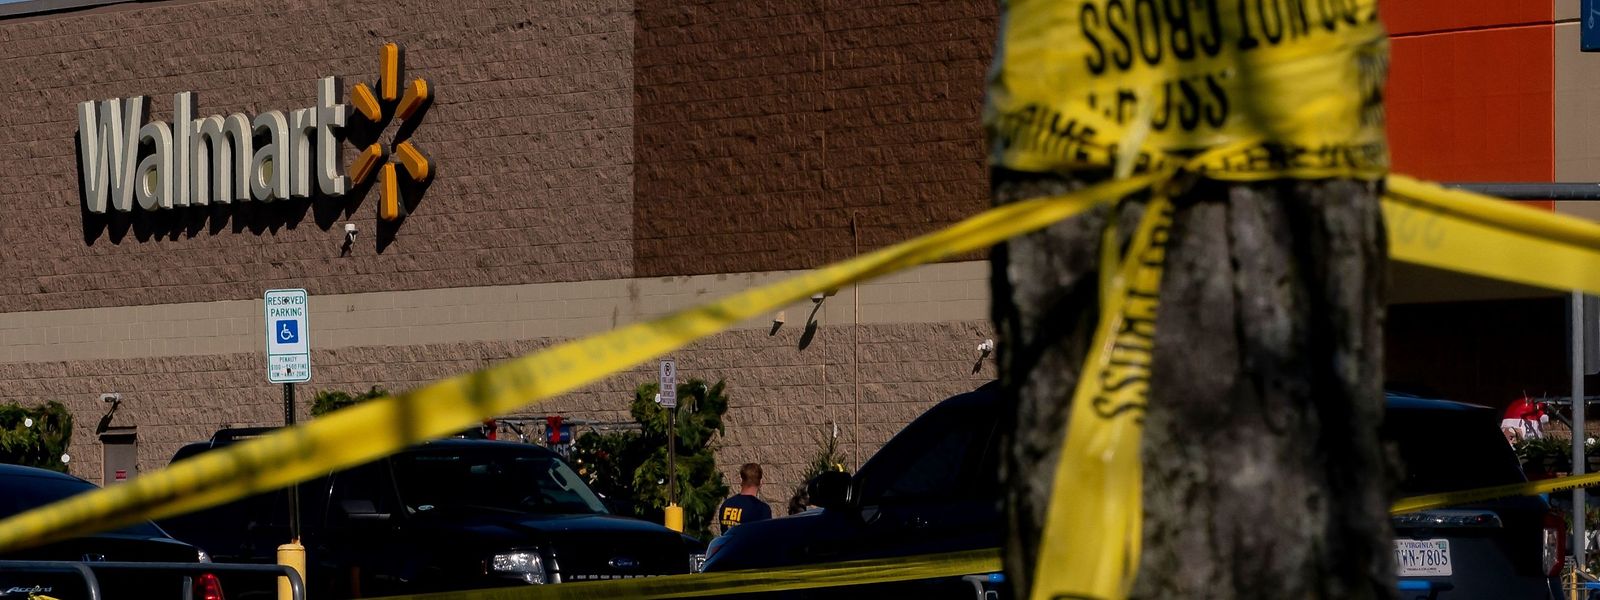 Bei dem mutmaßlichen Täter handelte es sich um einen Mitarbeiter der Supermarktkette Walmart, wie die Polizei auf Nachfrage bestätigte.